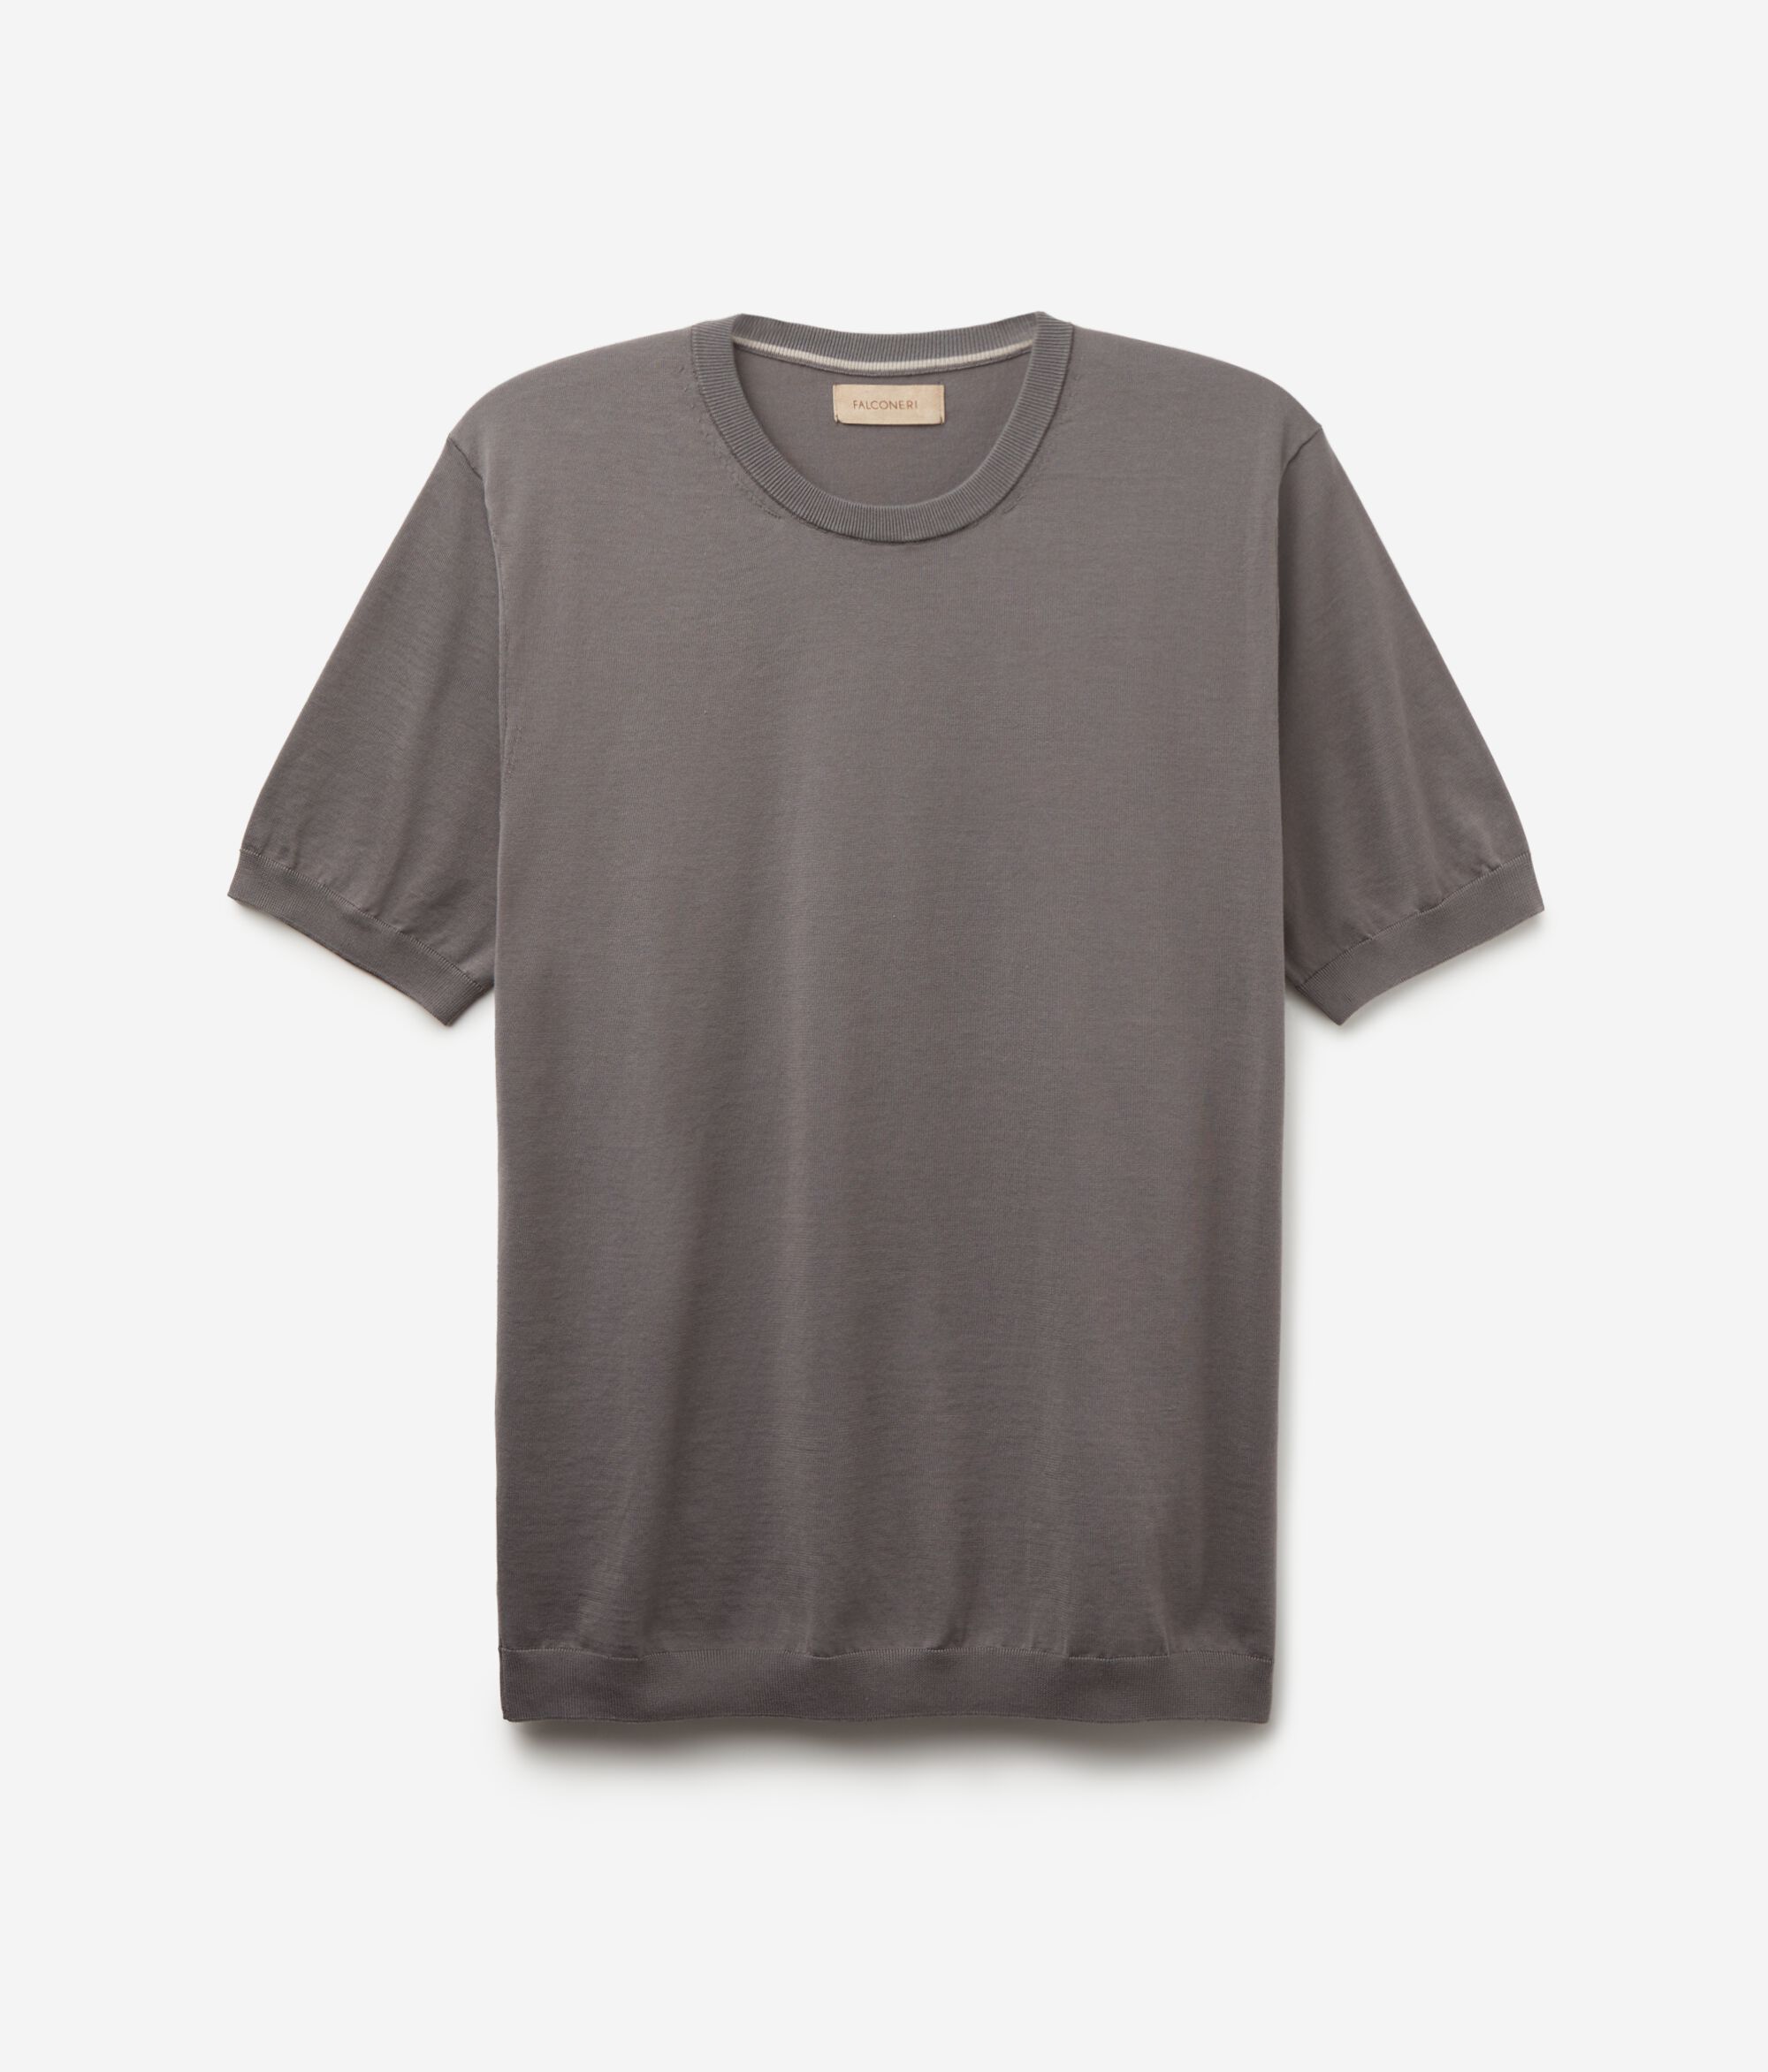 Rundhals-T-Shirt mit kurzen Ärmeln aus frischer Baumwolle